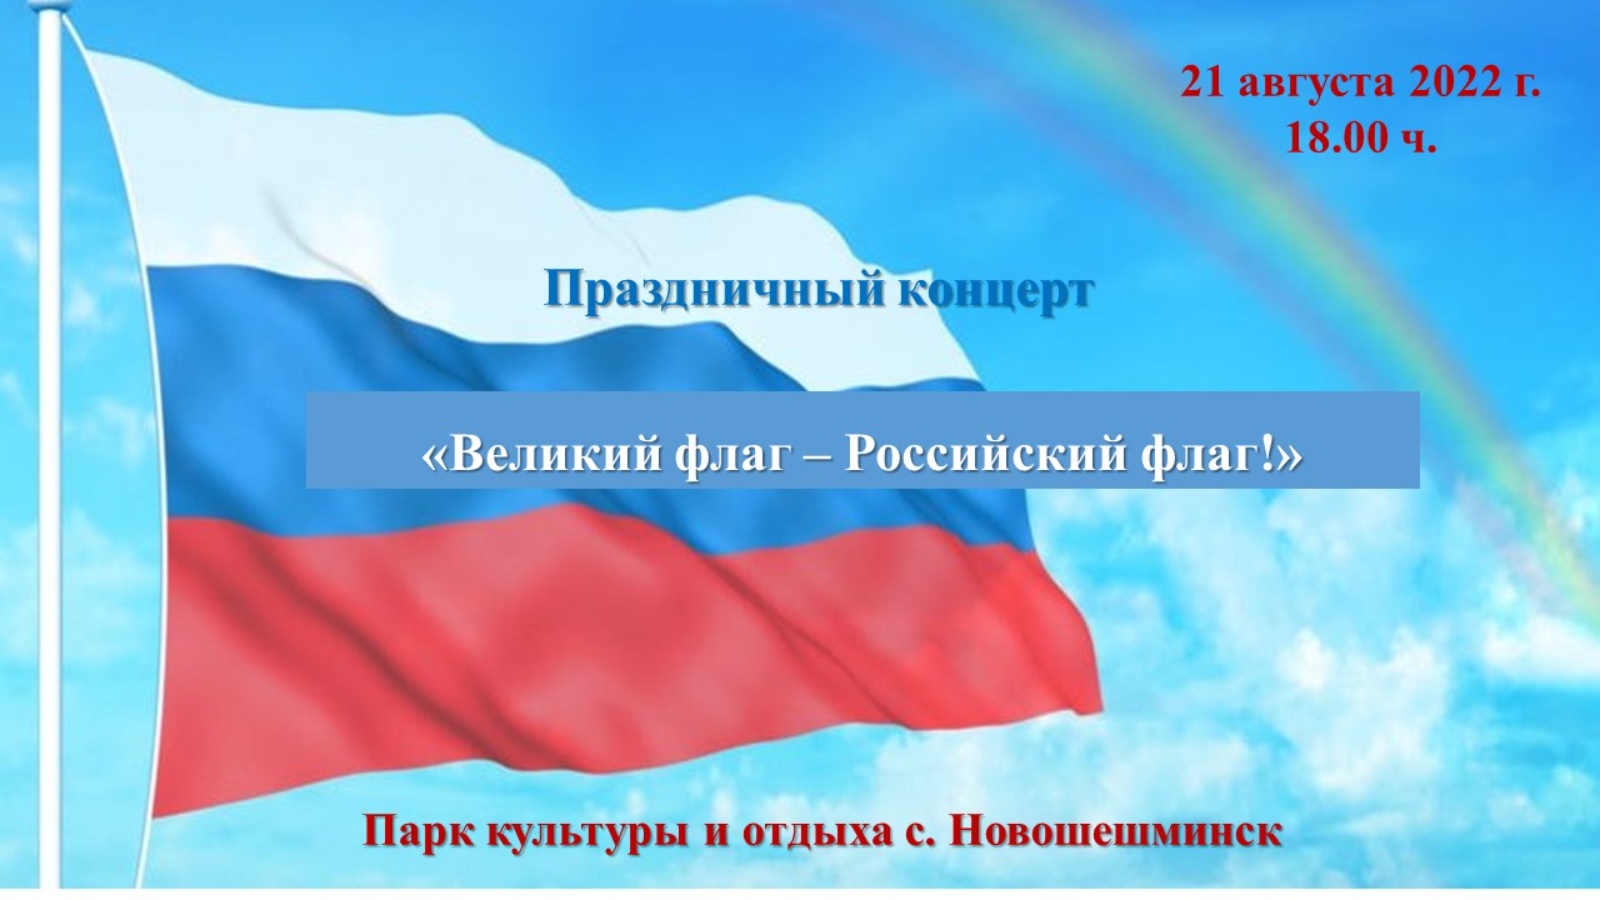 Для меня россия мама папа триколор. Фон российский флаг. Флаг на фоне неба. День государственного флага Российской Федерации. Триколор флаг.